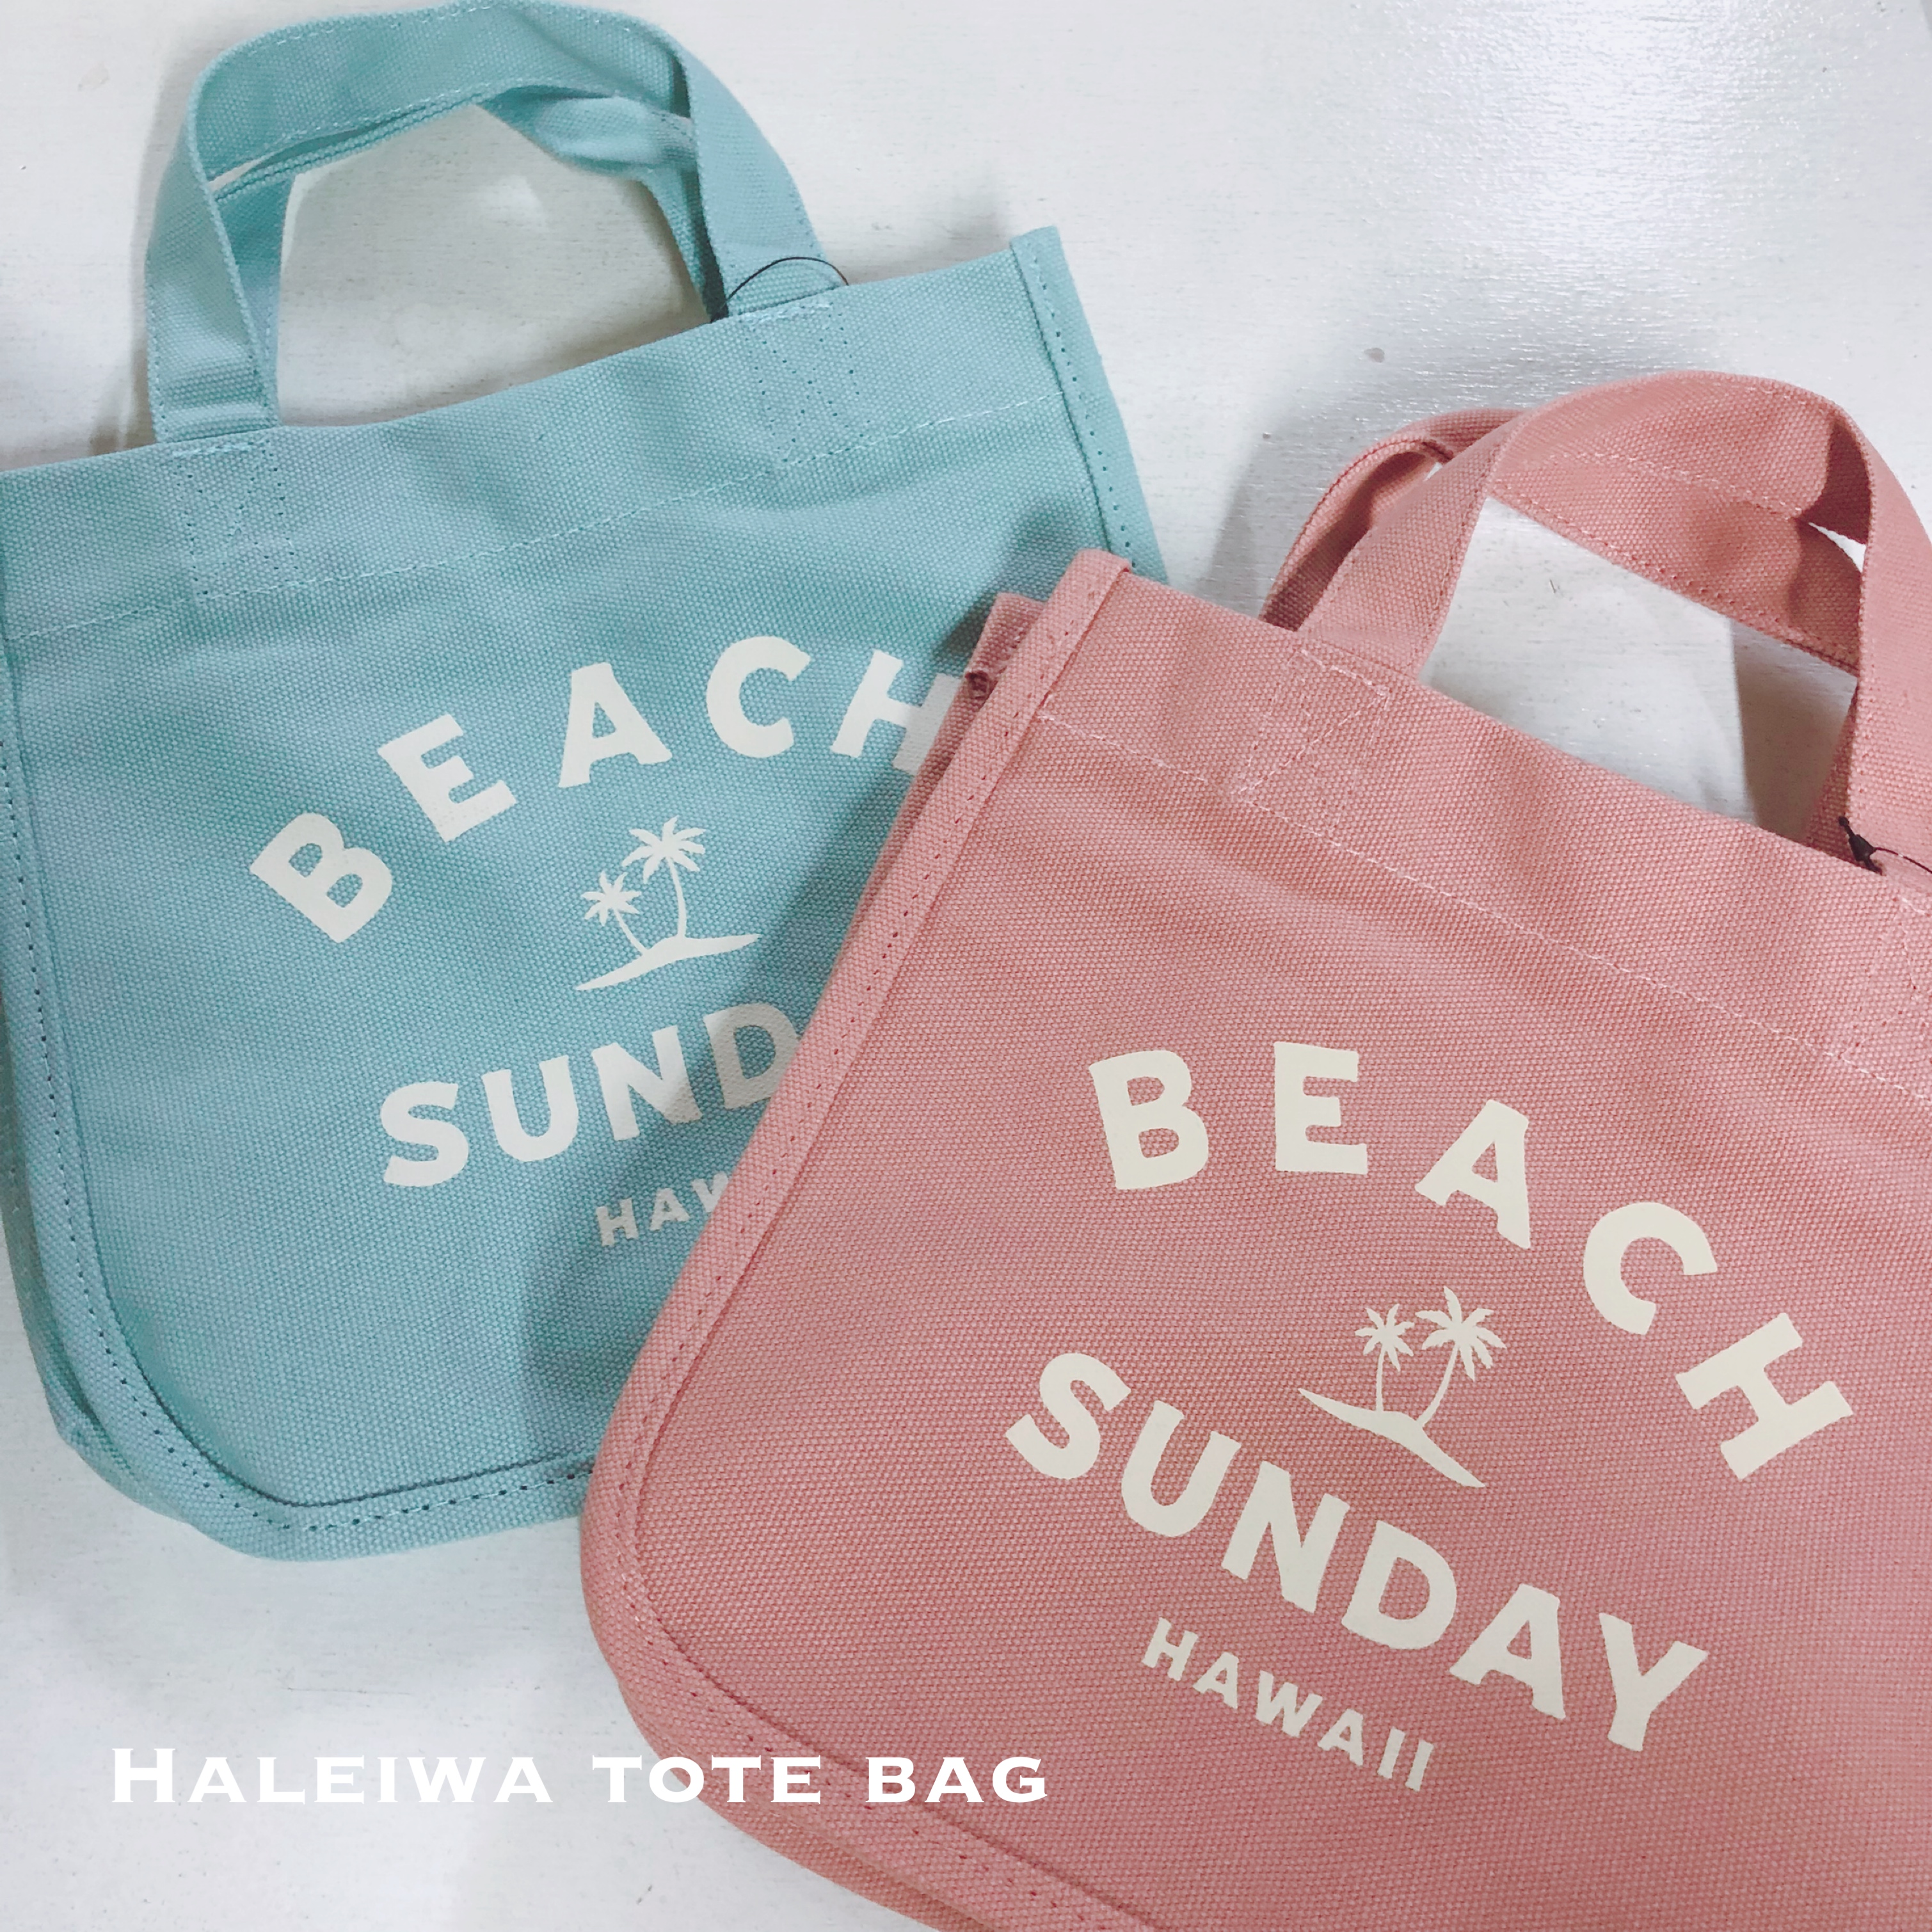 HALEIWA BEACH SUNDAY ~jg[g